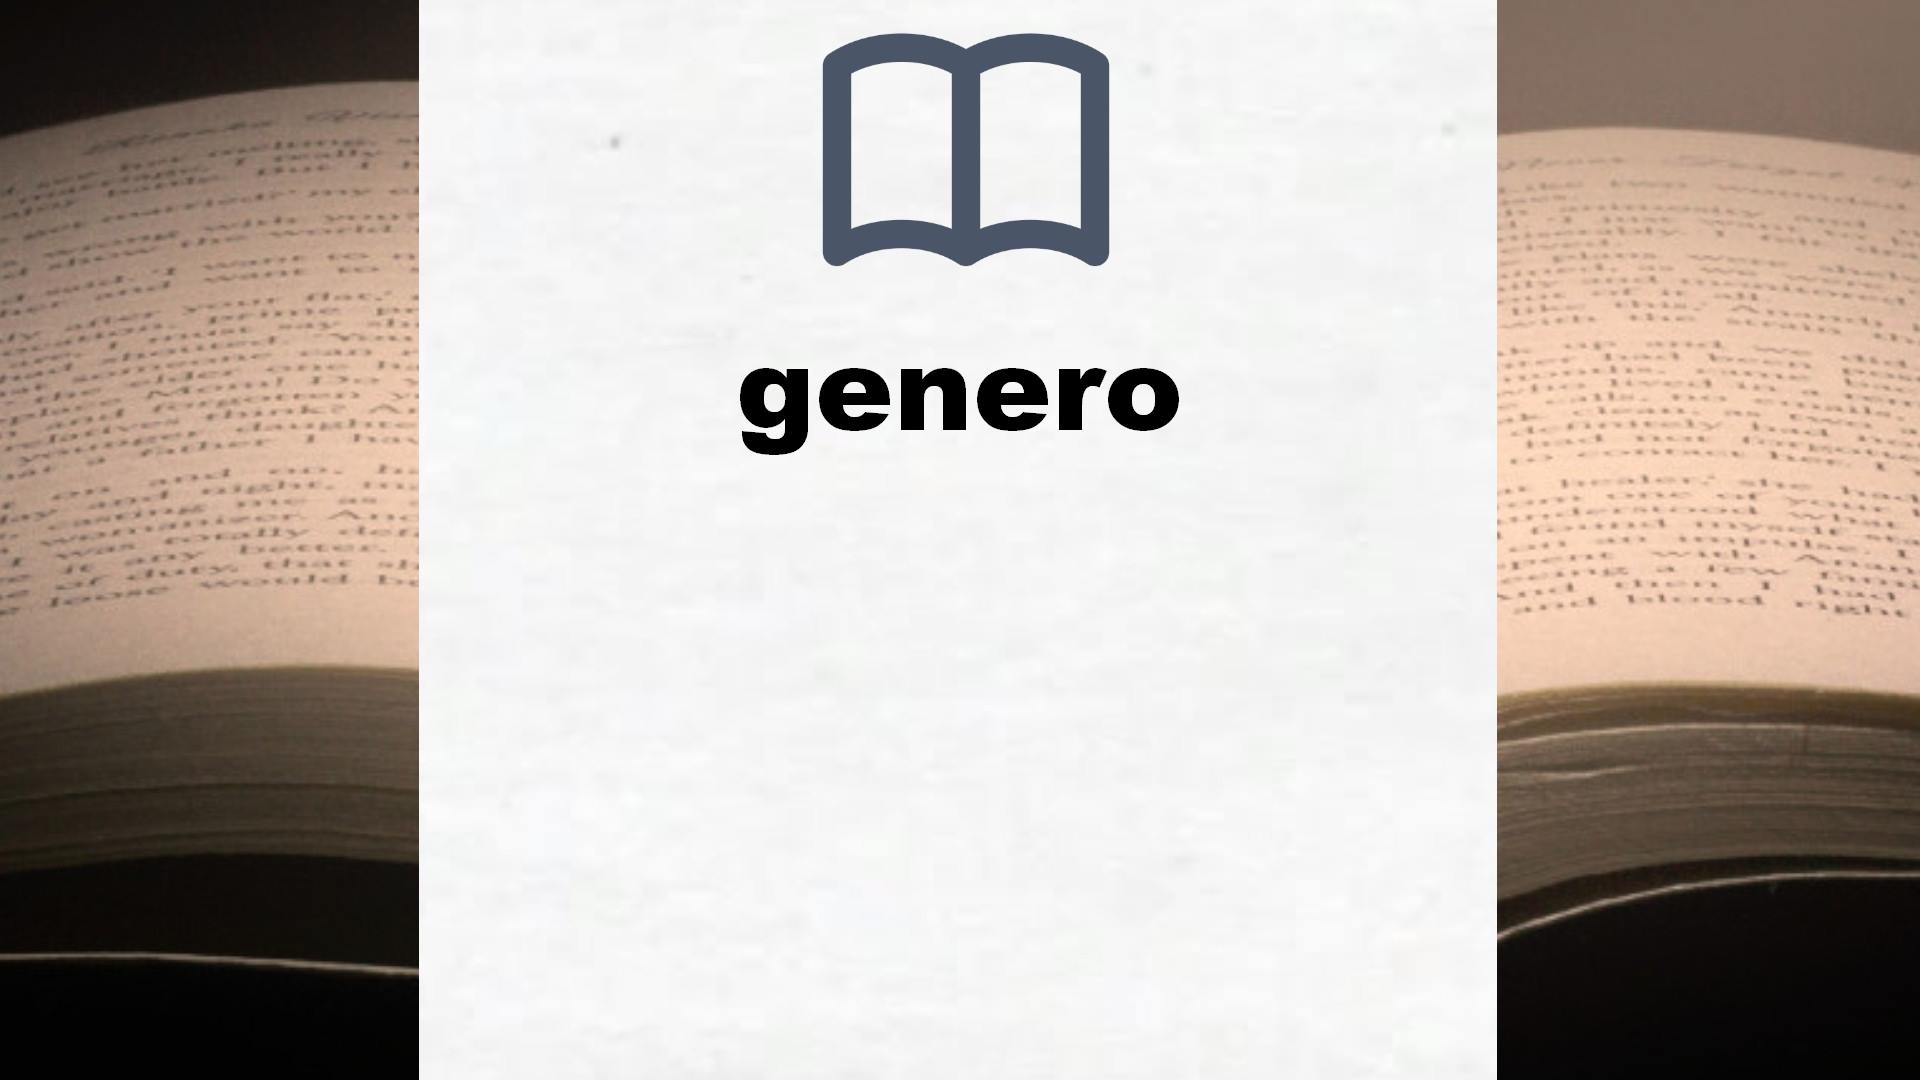 Libros sobre genero